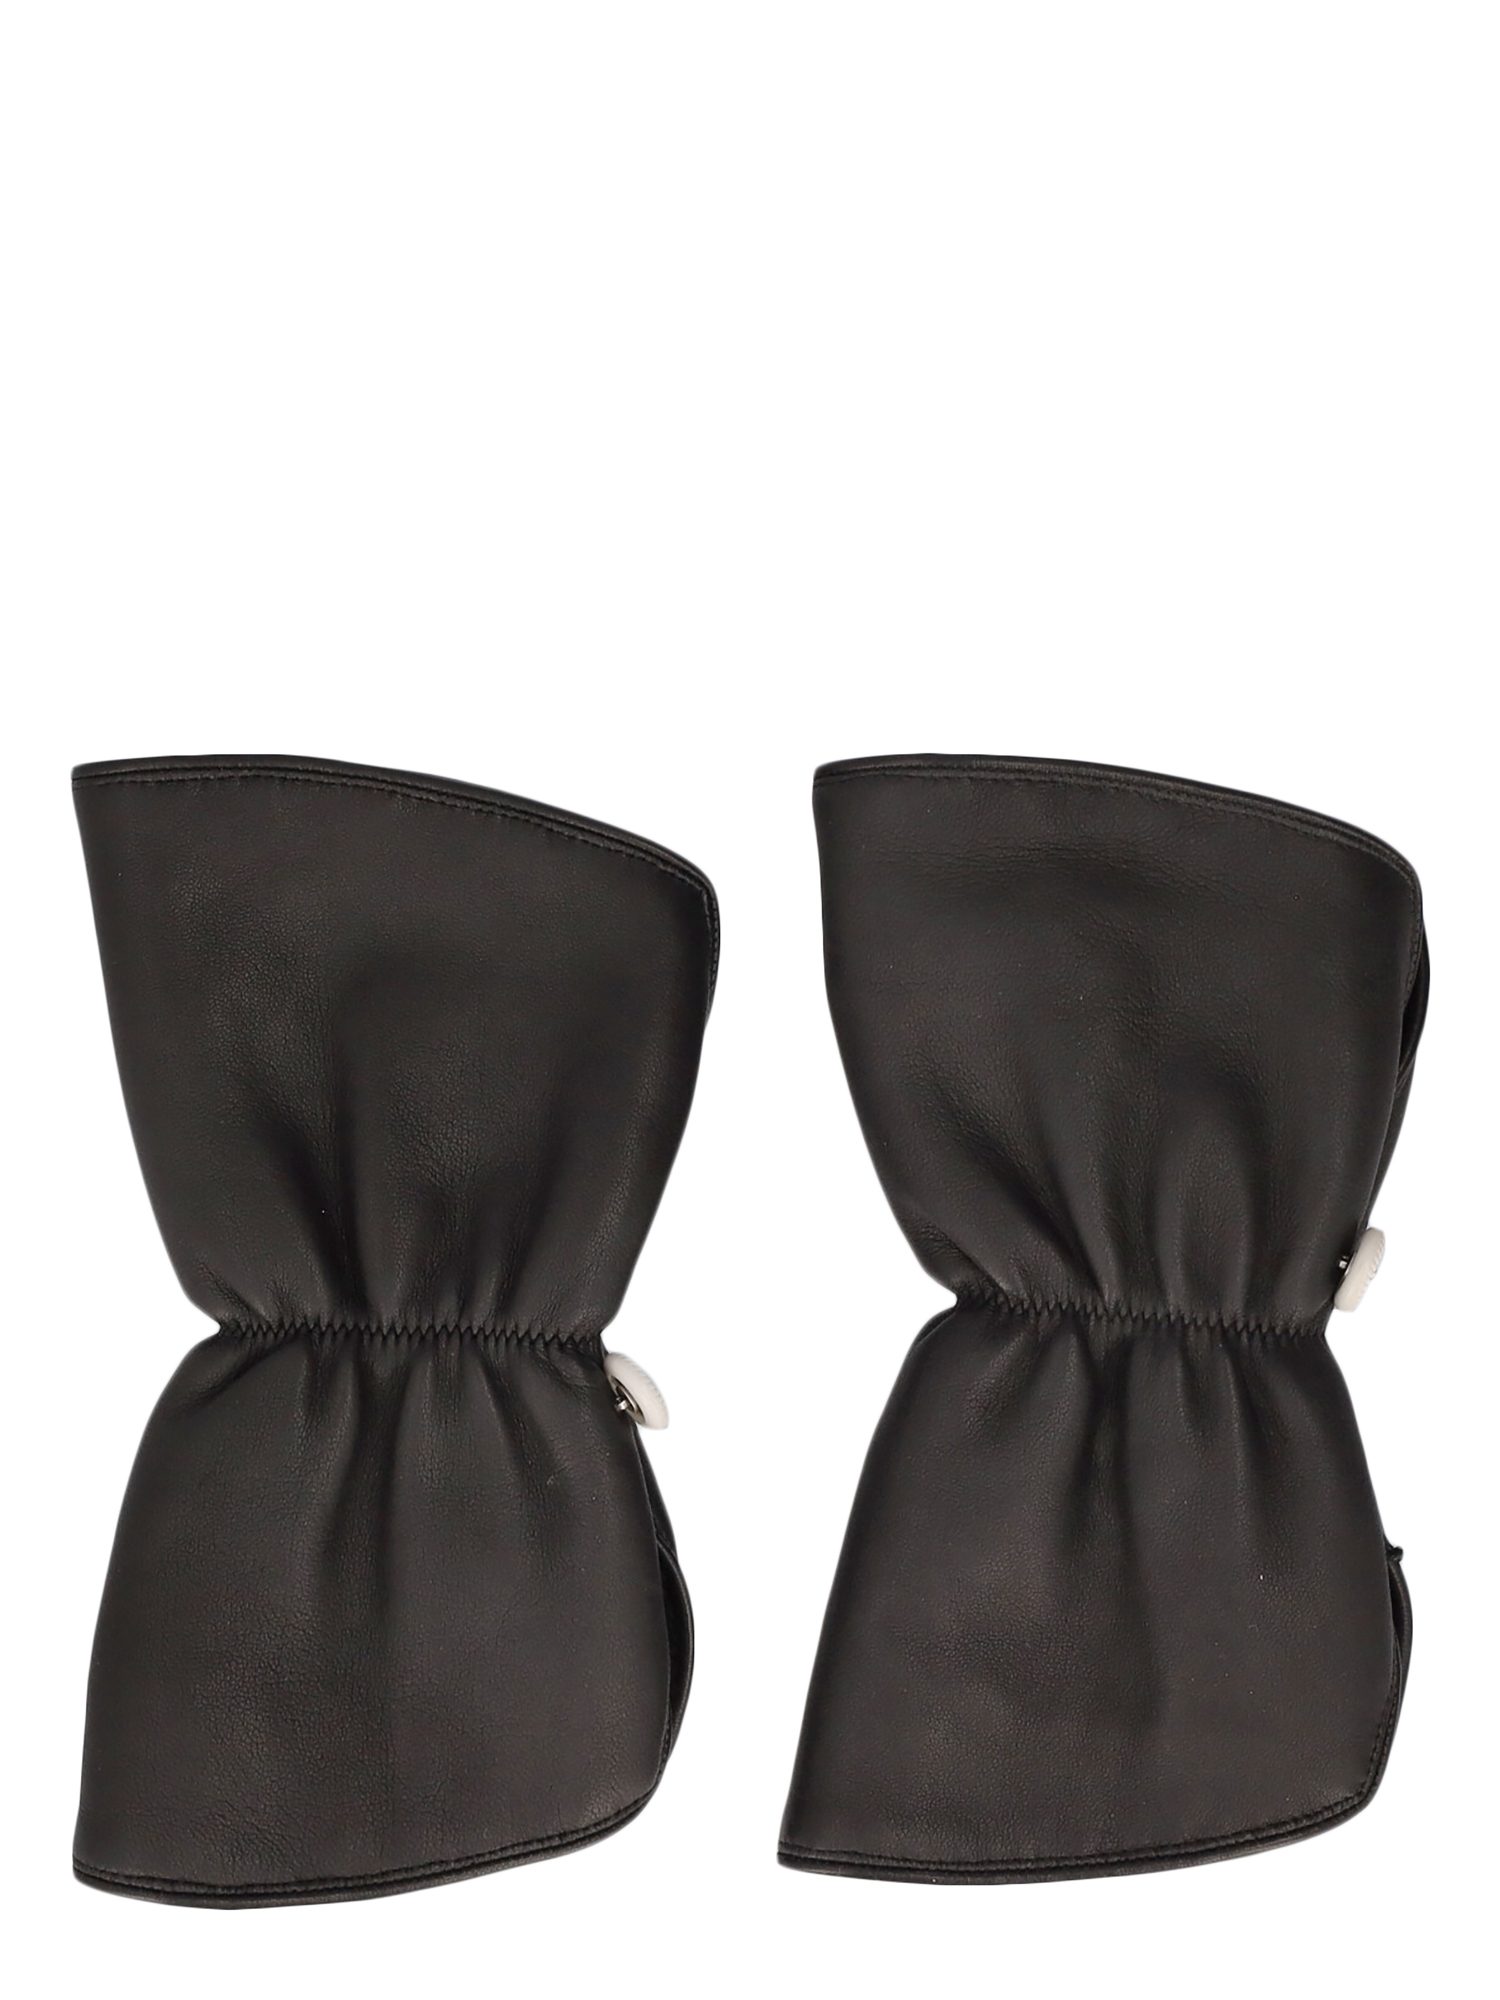 Gants Pour Femme - Chanel - En Leather Black - Taille:  -